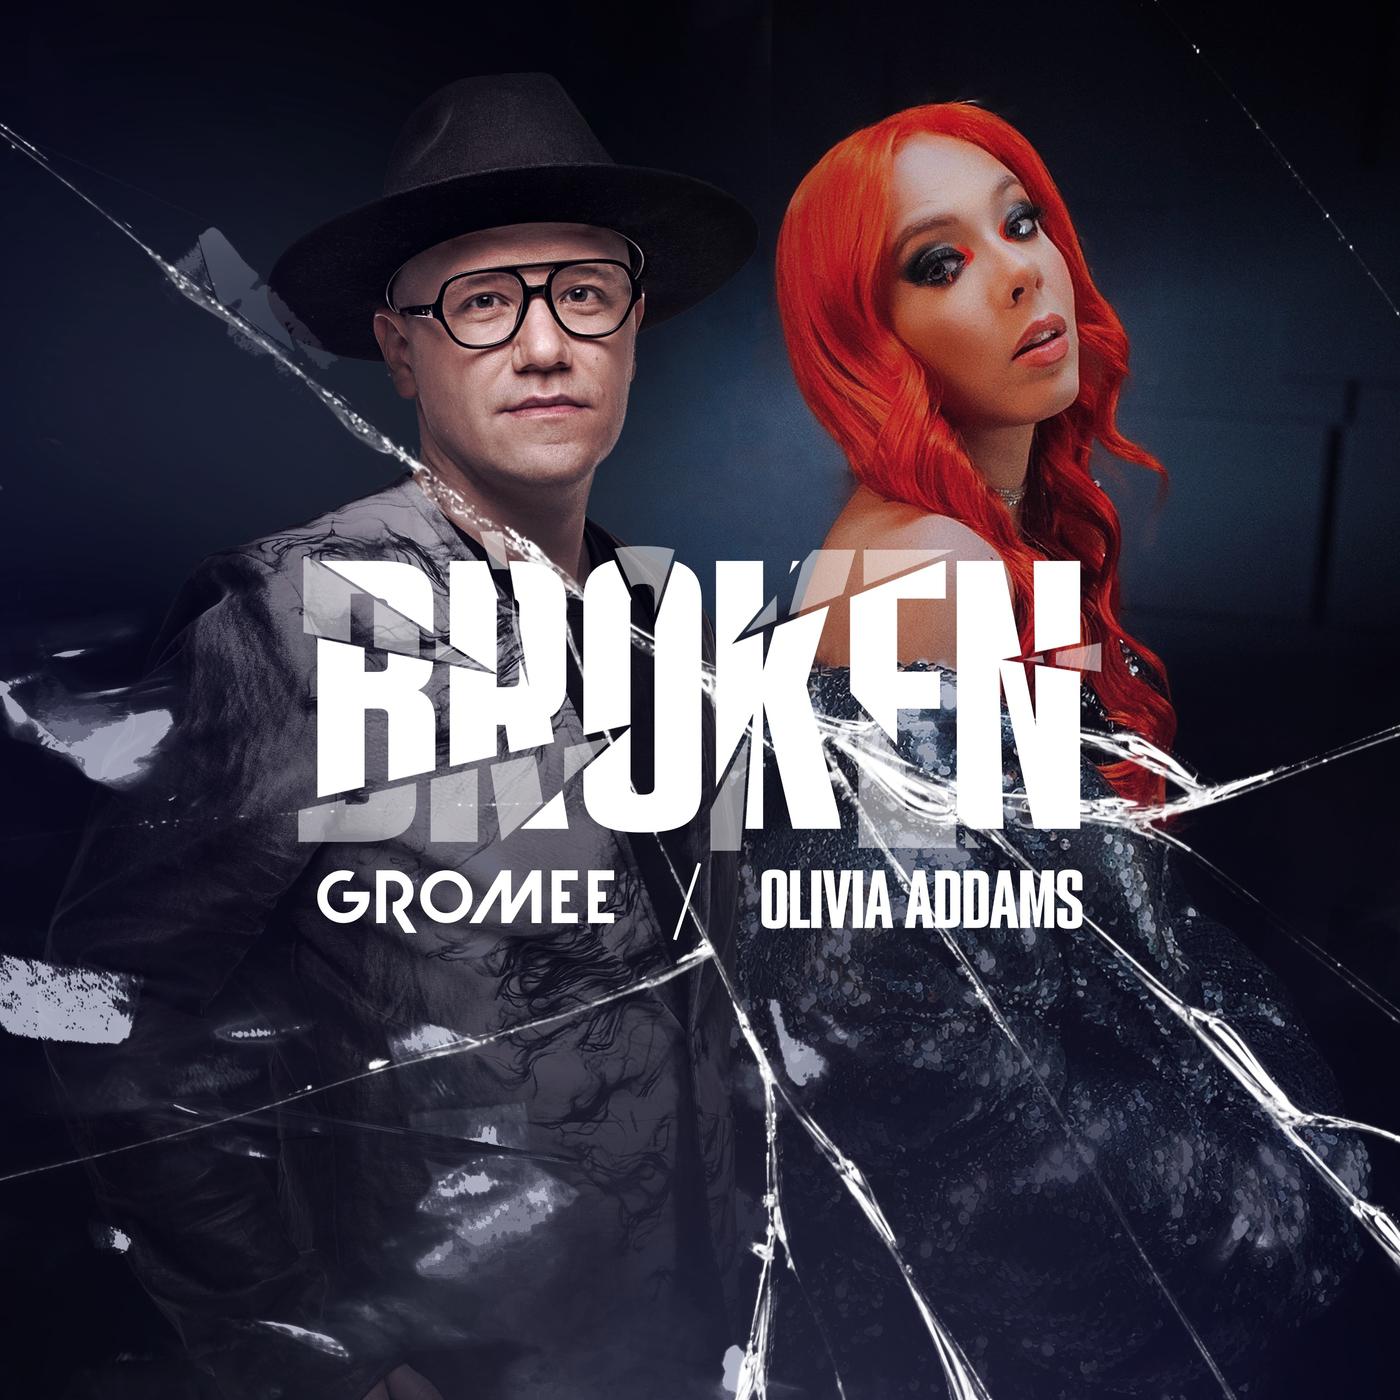 Gromee - Broken